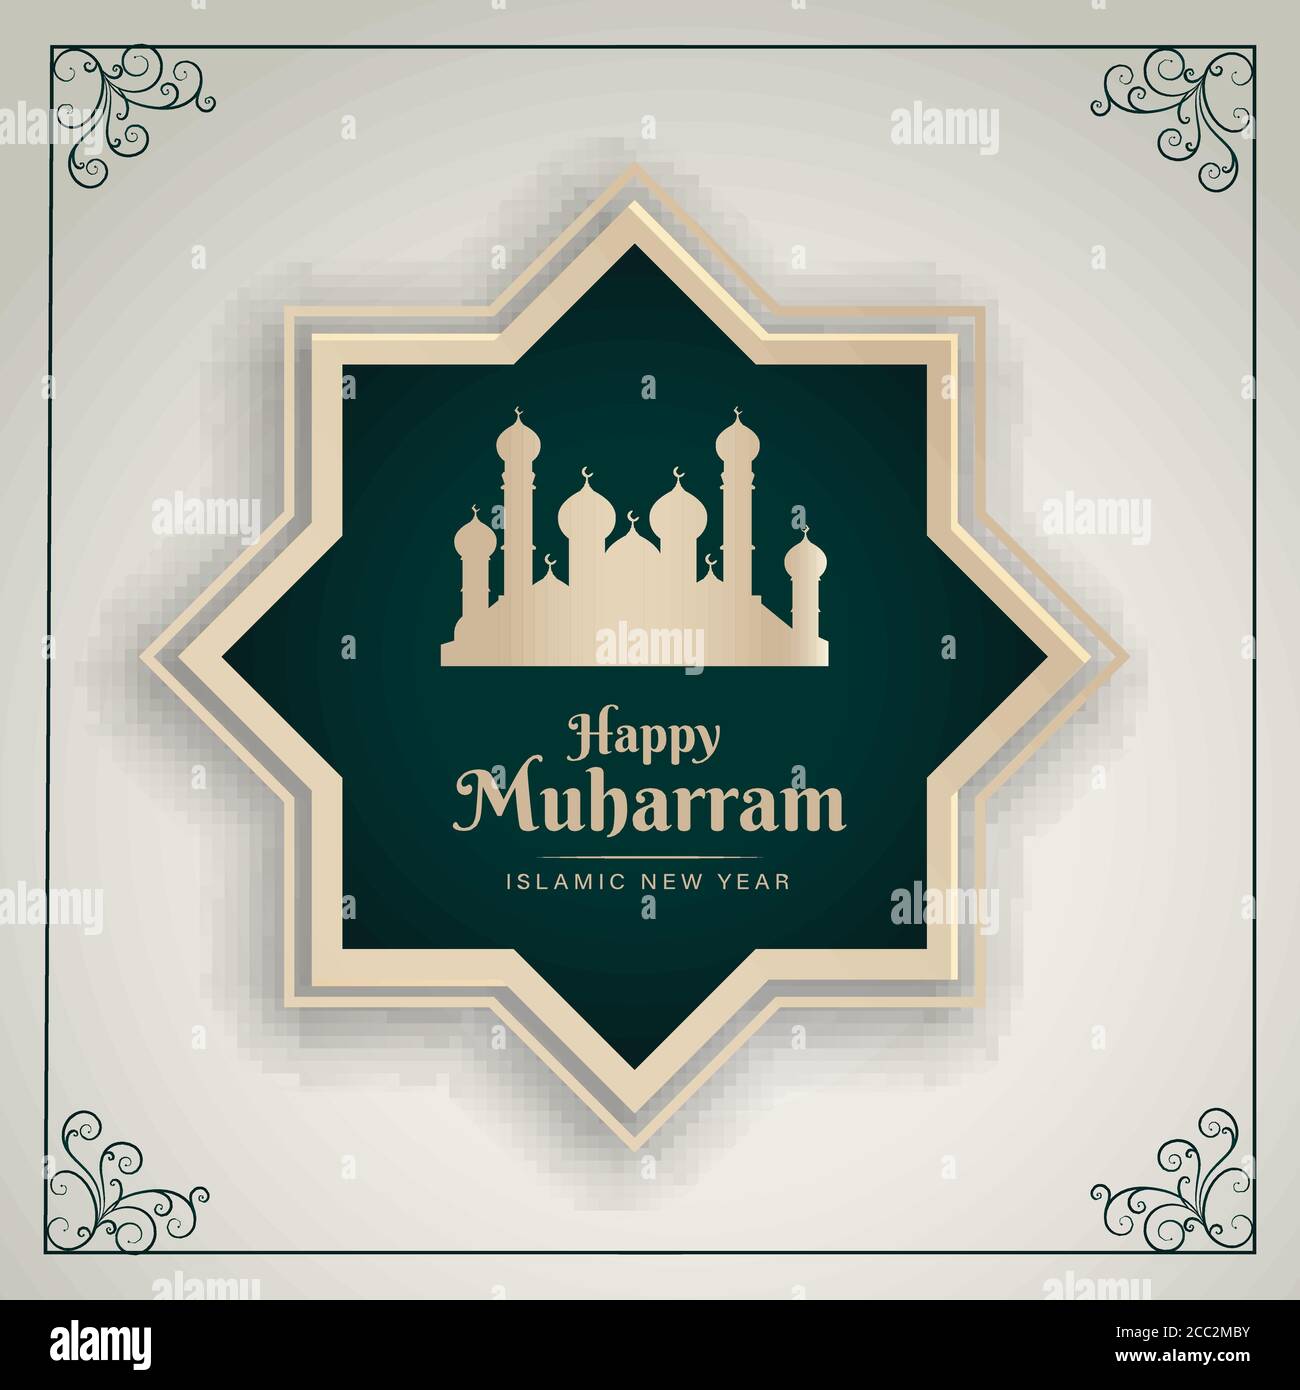 Happy Muharram, islamische Neujahr Grußkarte Moschee Illustration, Vektor Stock Vektor